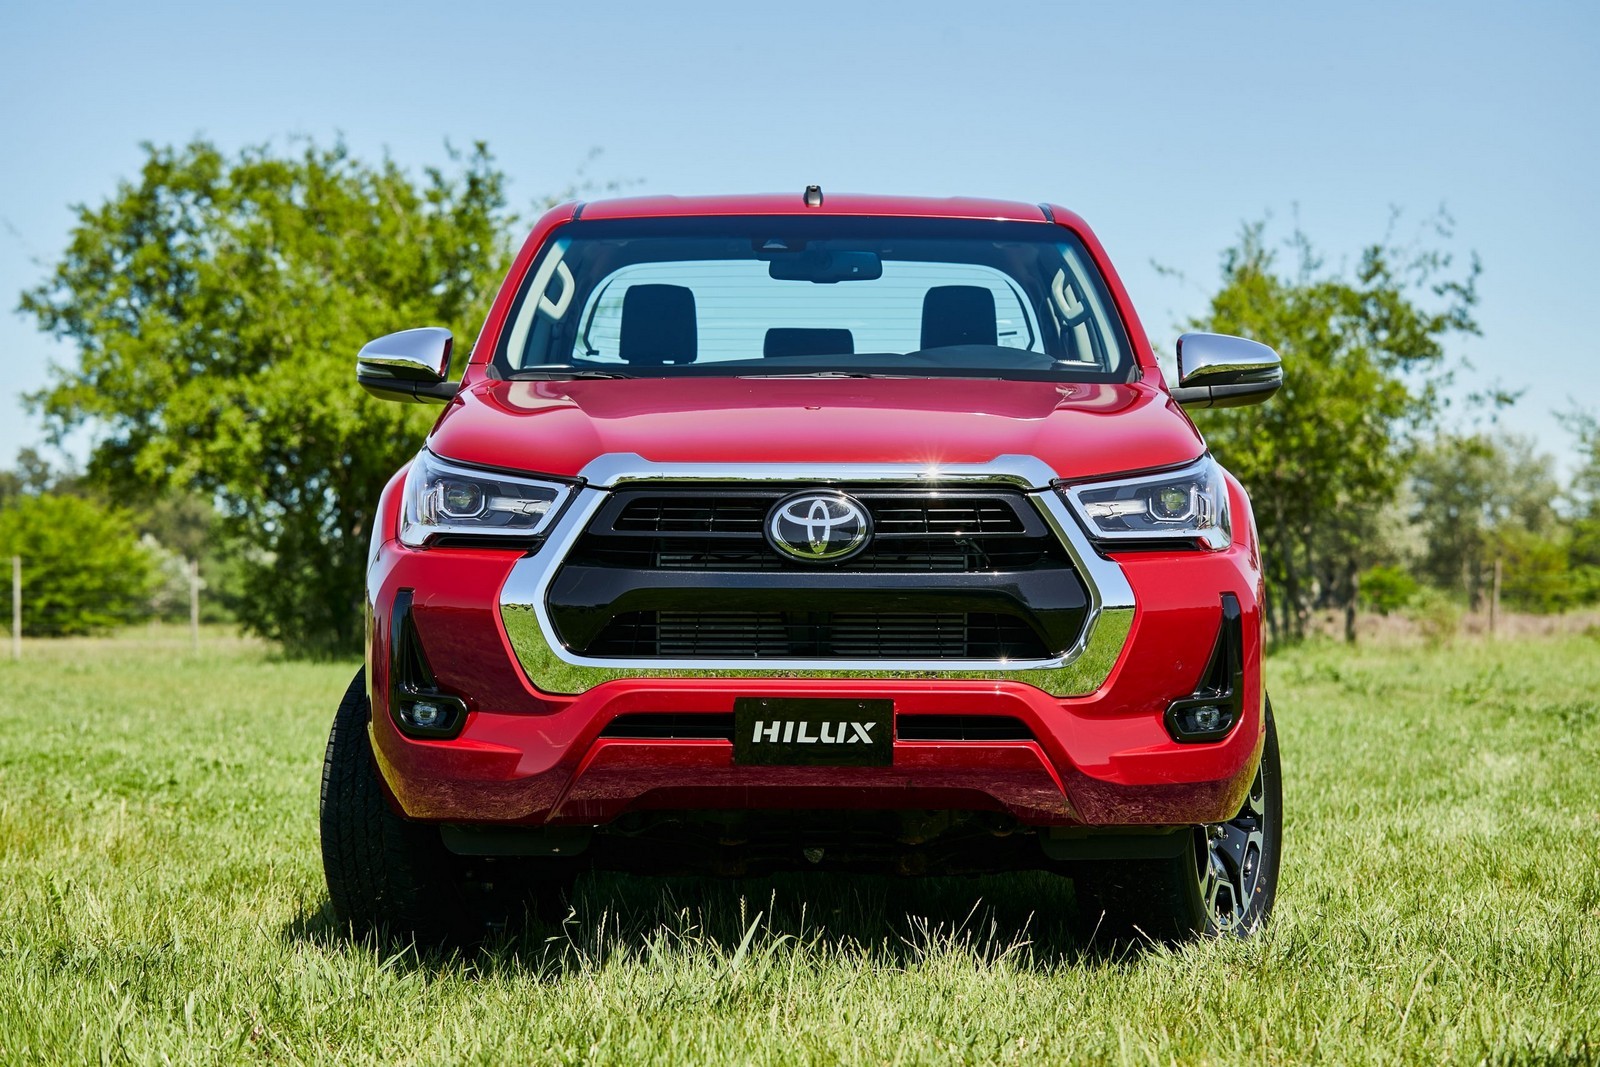 Toyota troca rota de importação e Hilux não entrará mais no Brasil pelo RS